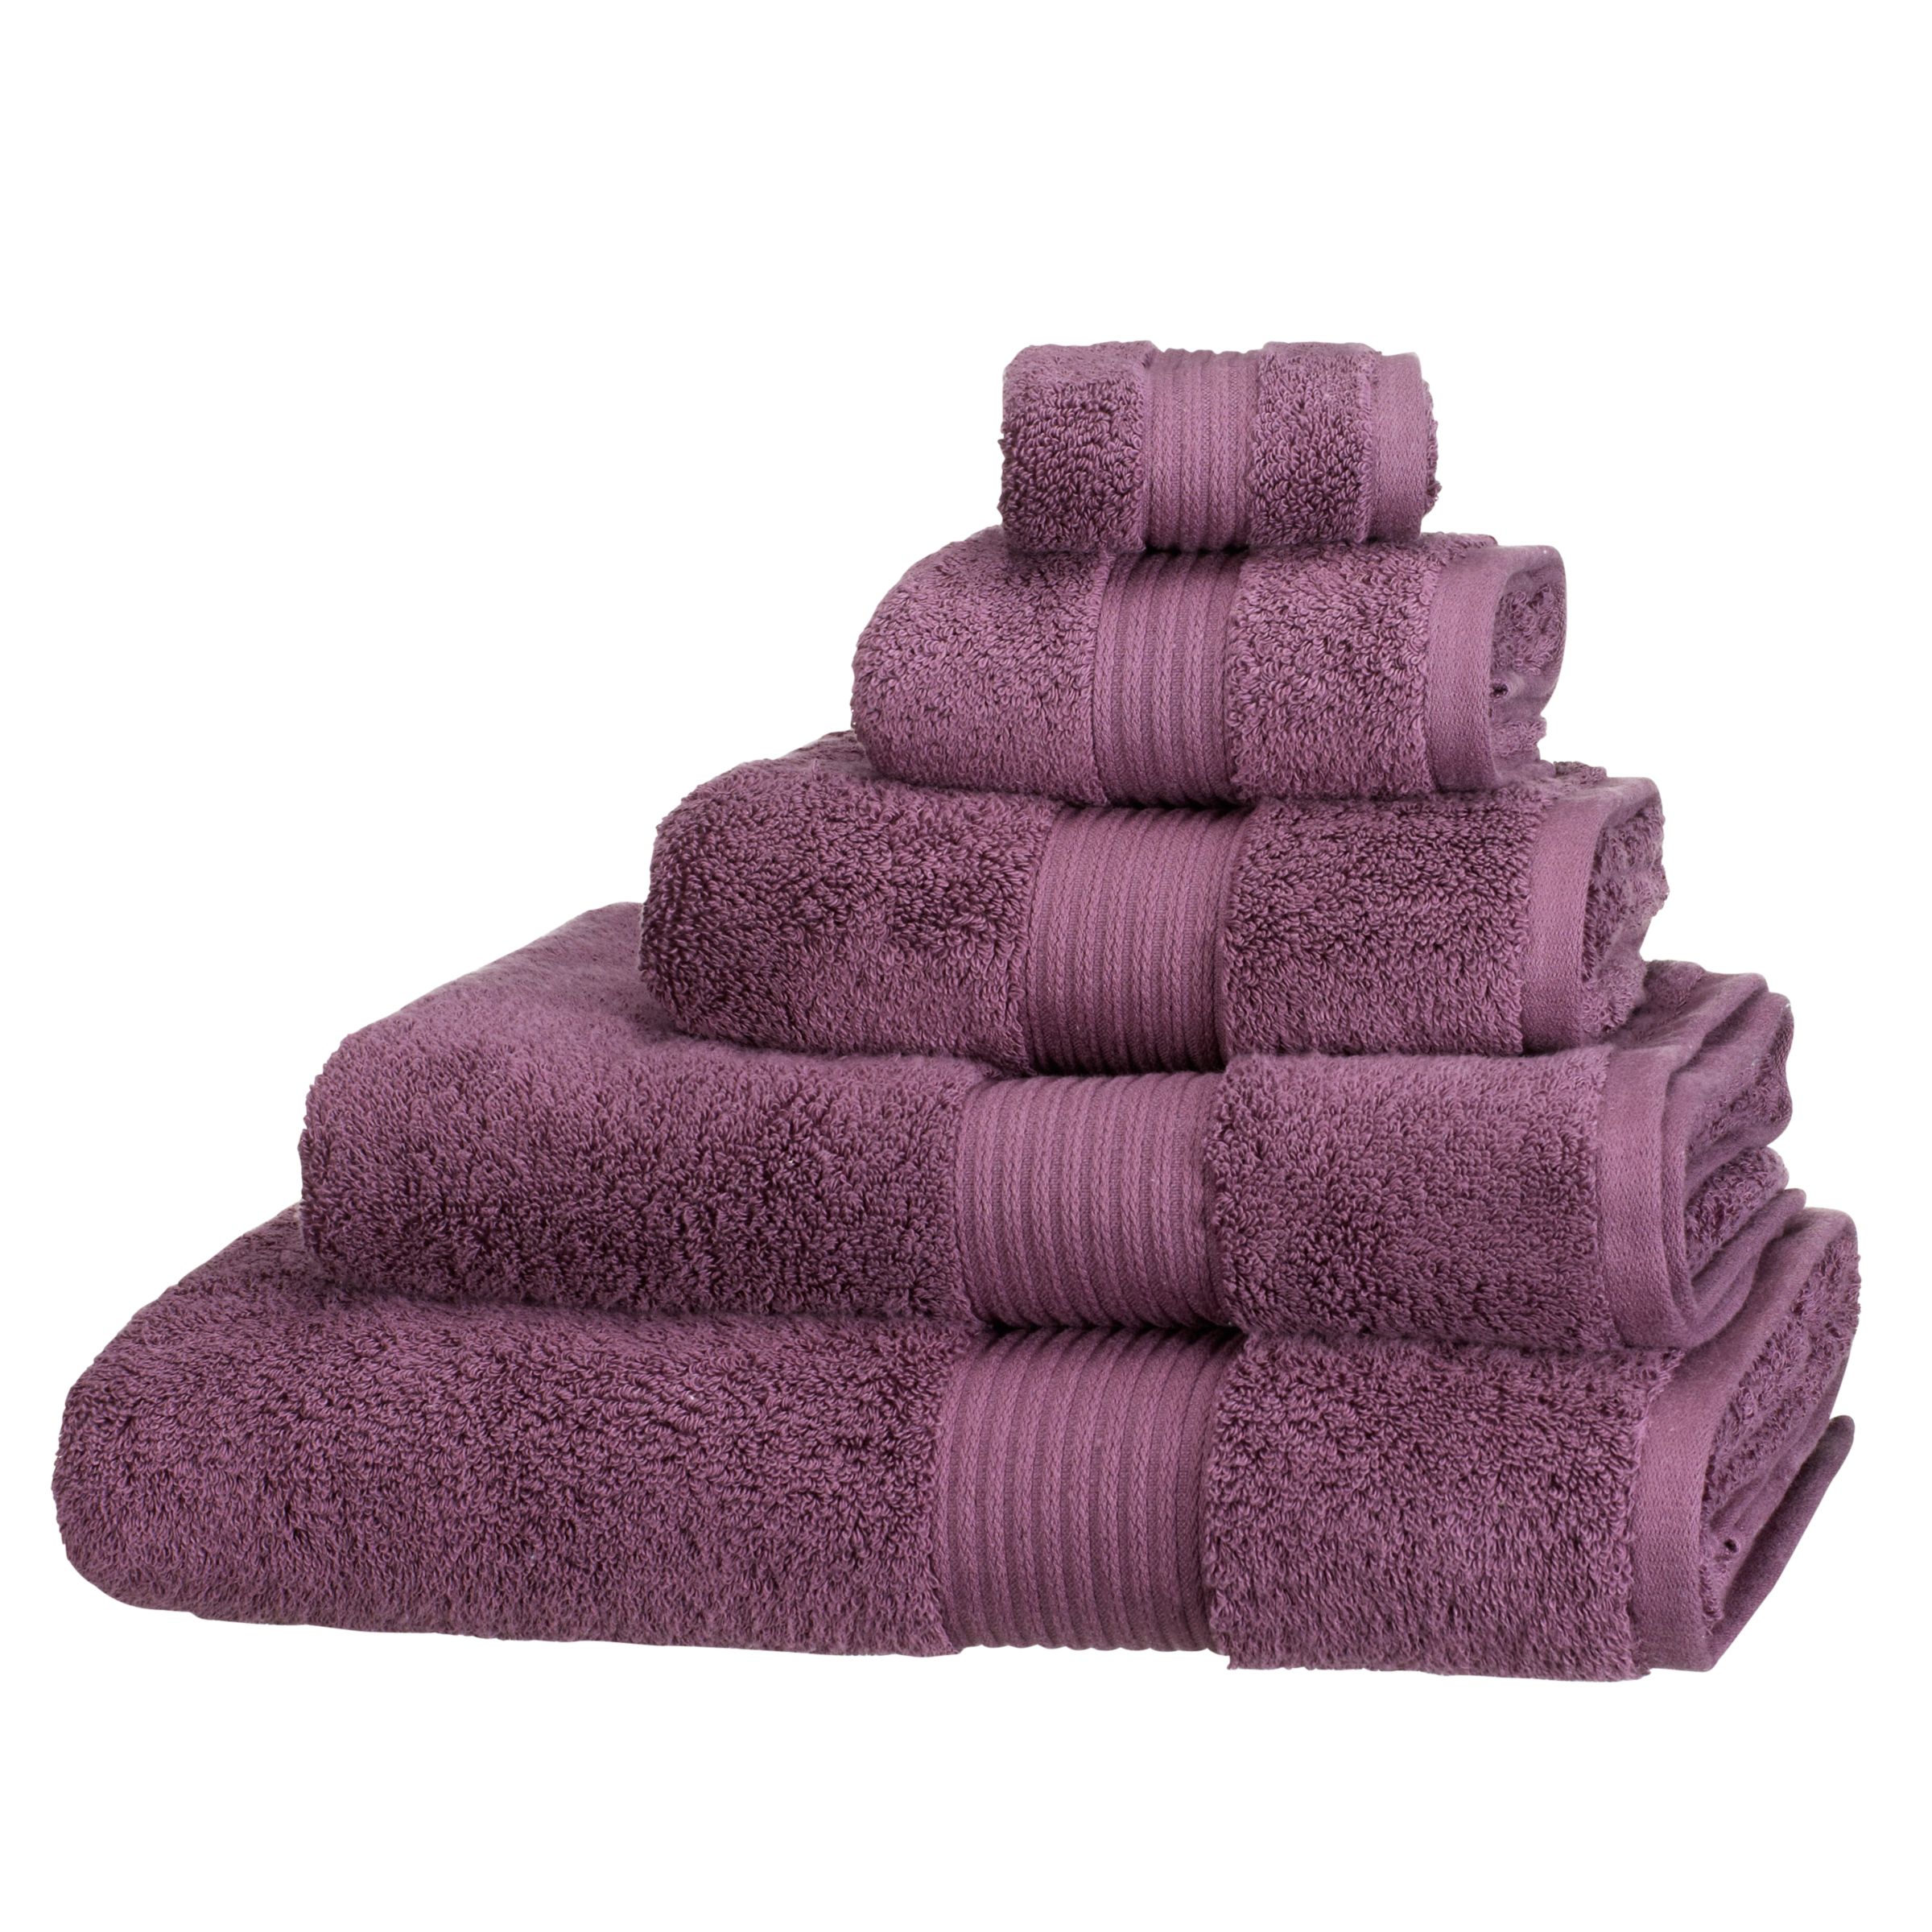 John Lewis Pure Cotton Towels, Cassis 109998